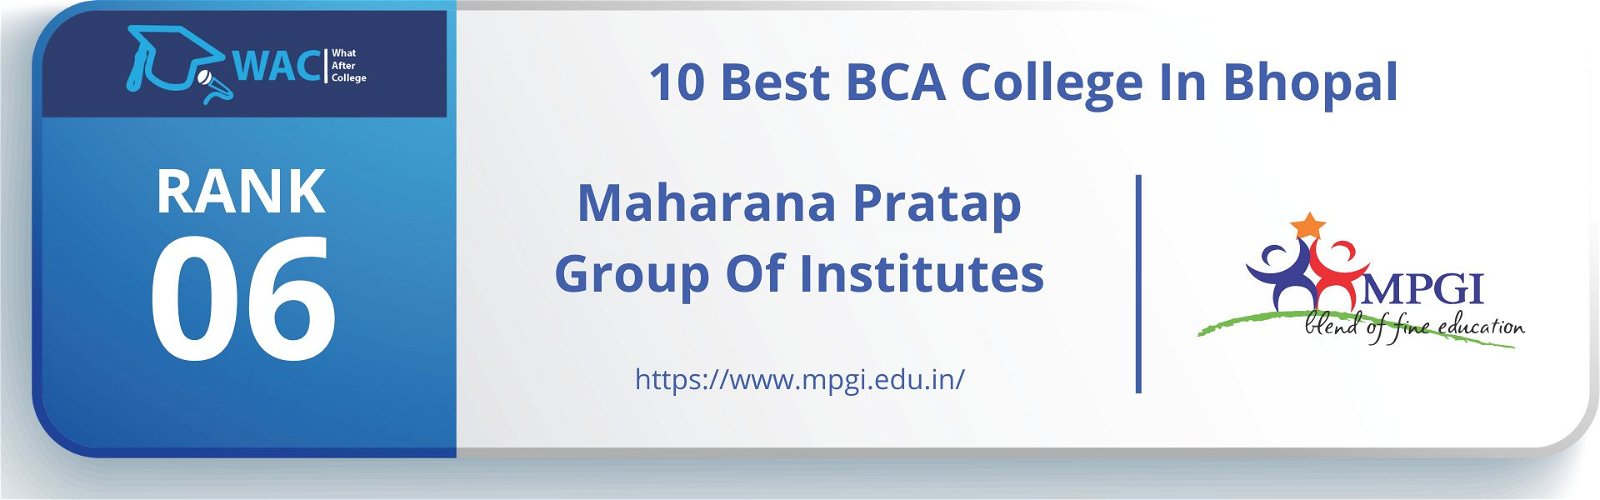 best bca college in bhopal